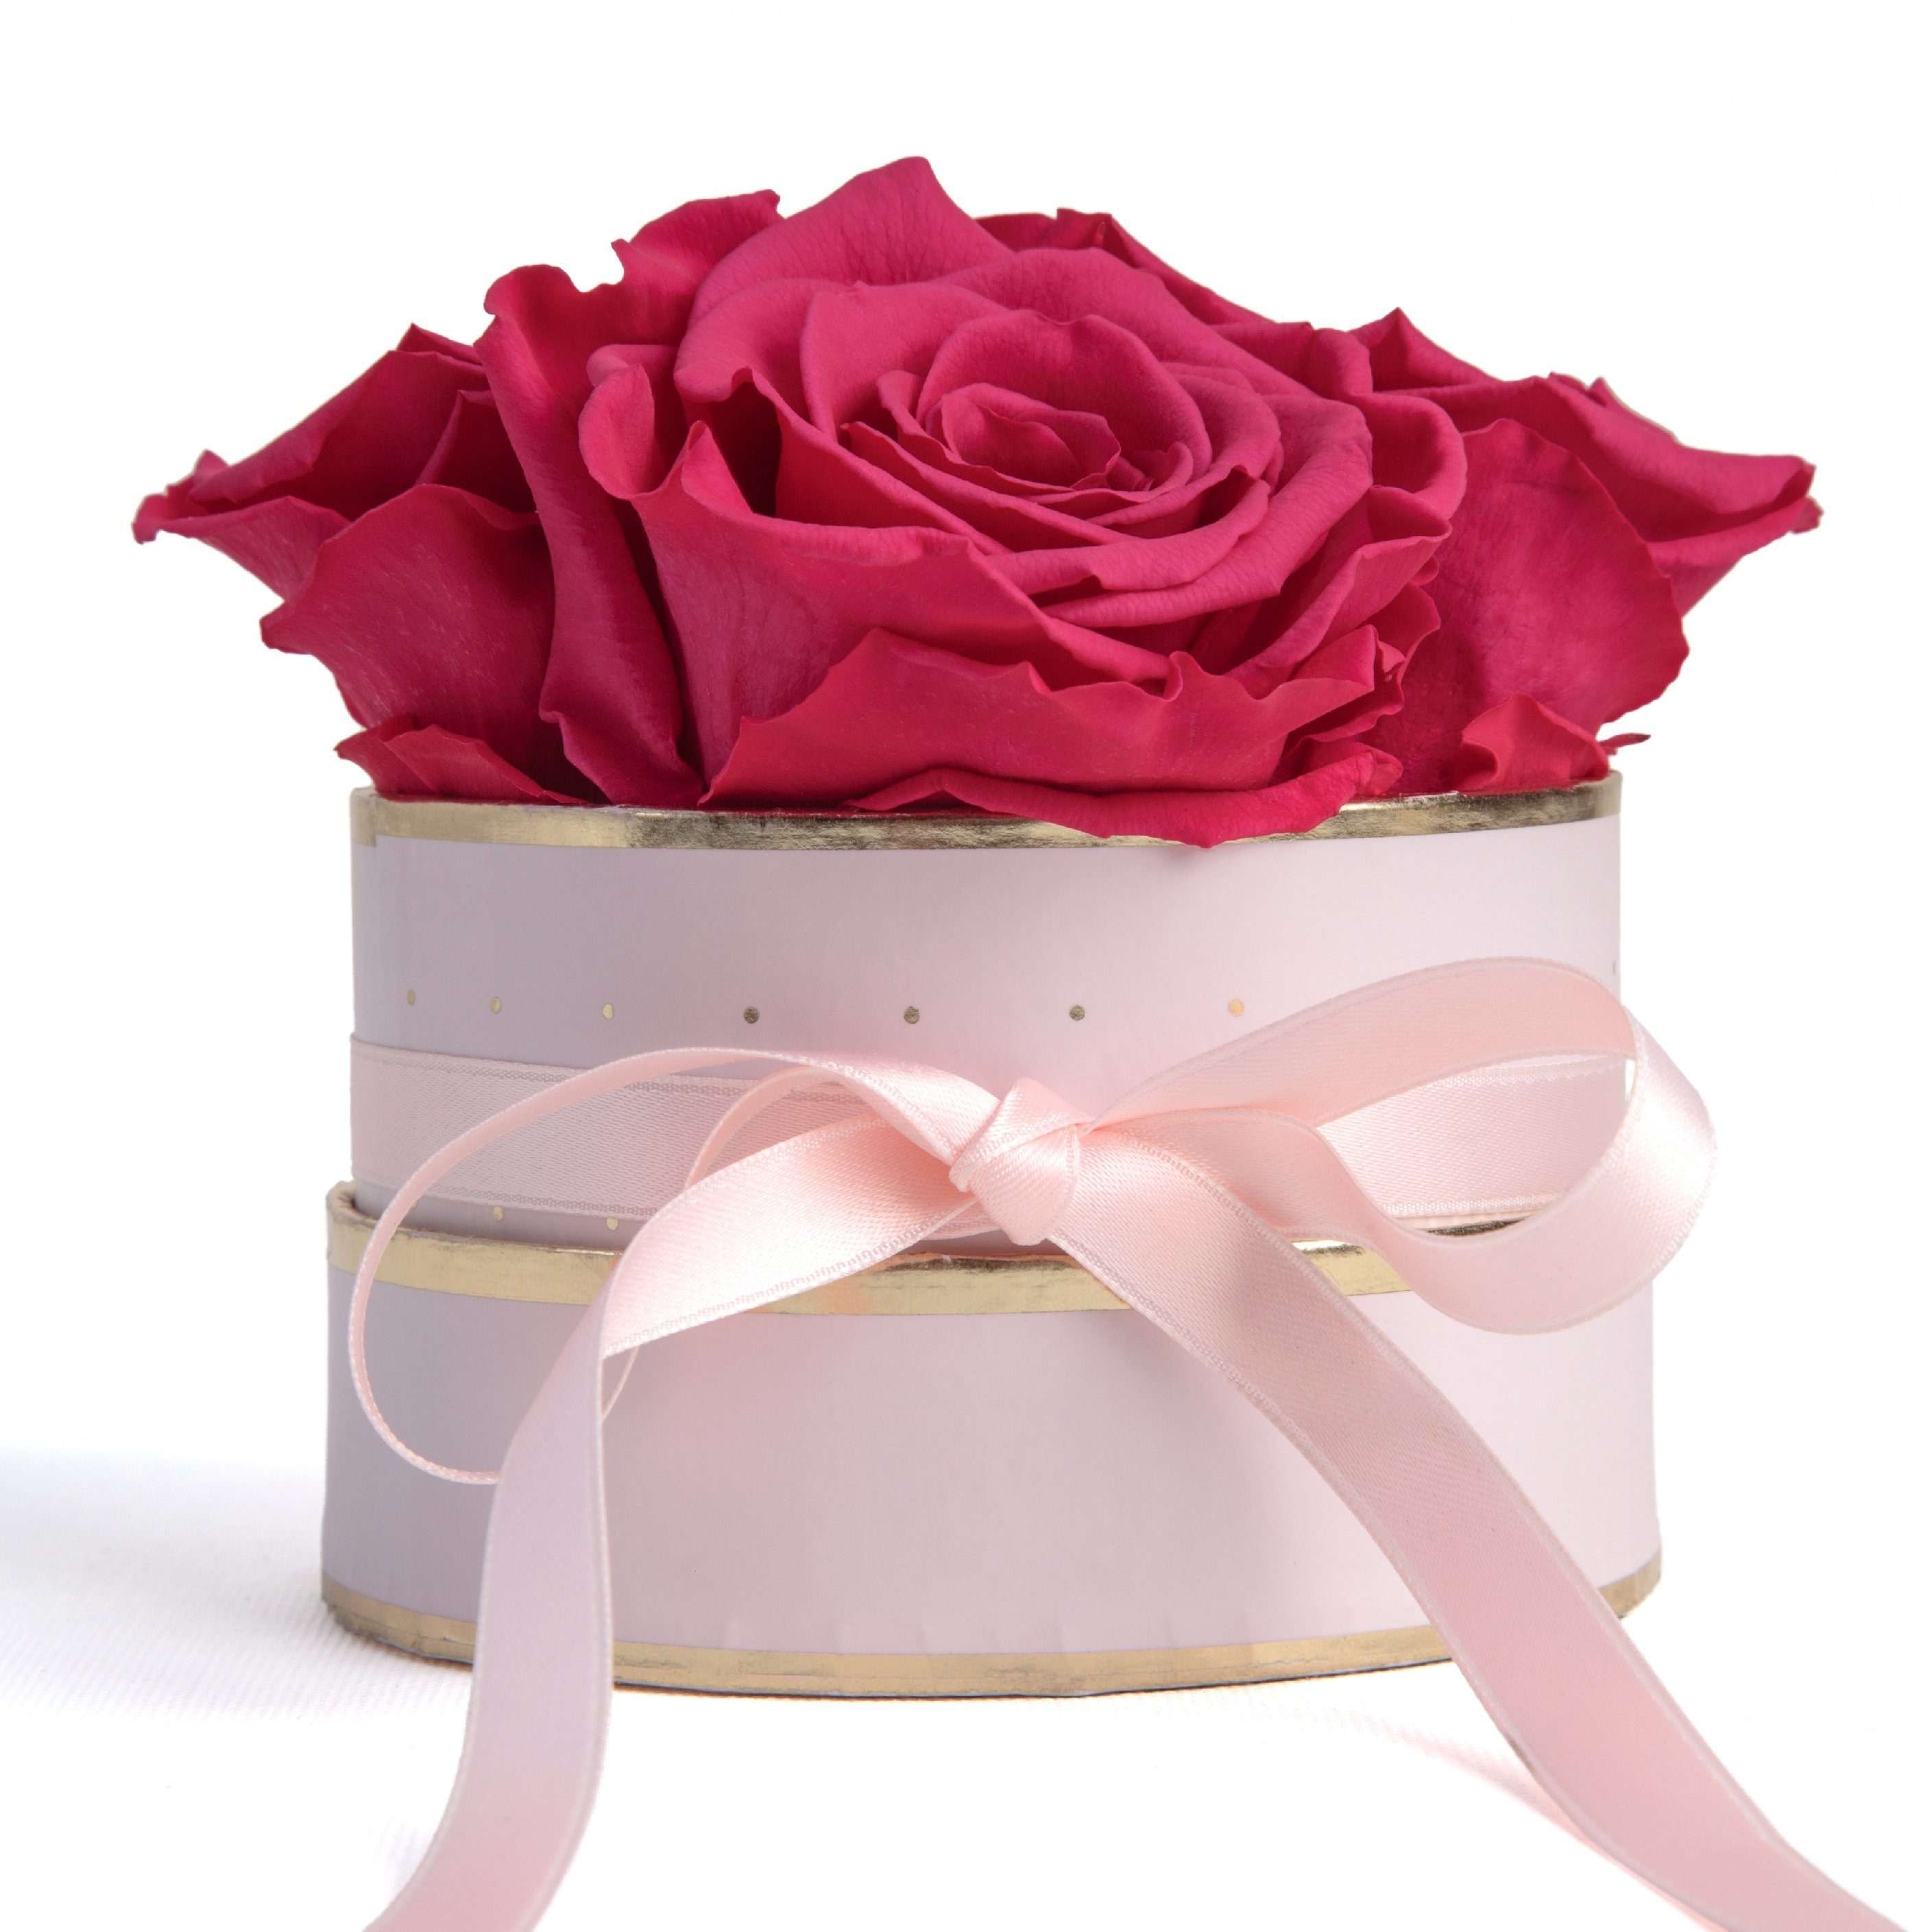 Kunstblume Infinity Rosenbox rosa rund 4 konservierte Rosen Geschenk für Frauen Rose, ROSEMARIE SCHULZ Heidelberg, Höhe 10 cm, echte konservierte Rosen Pink